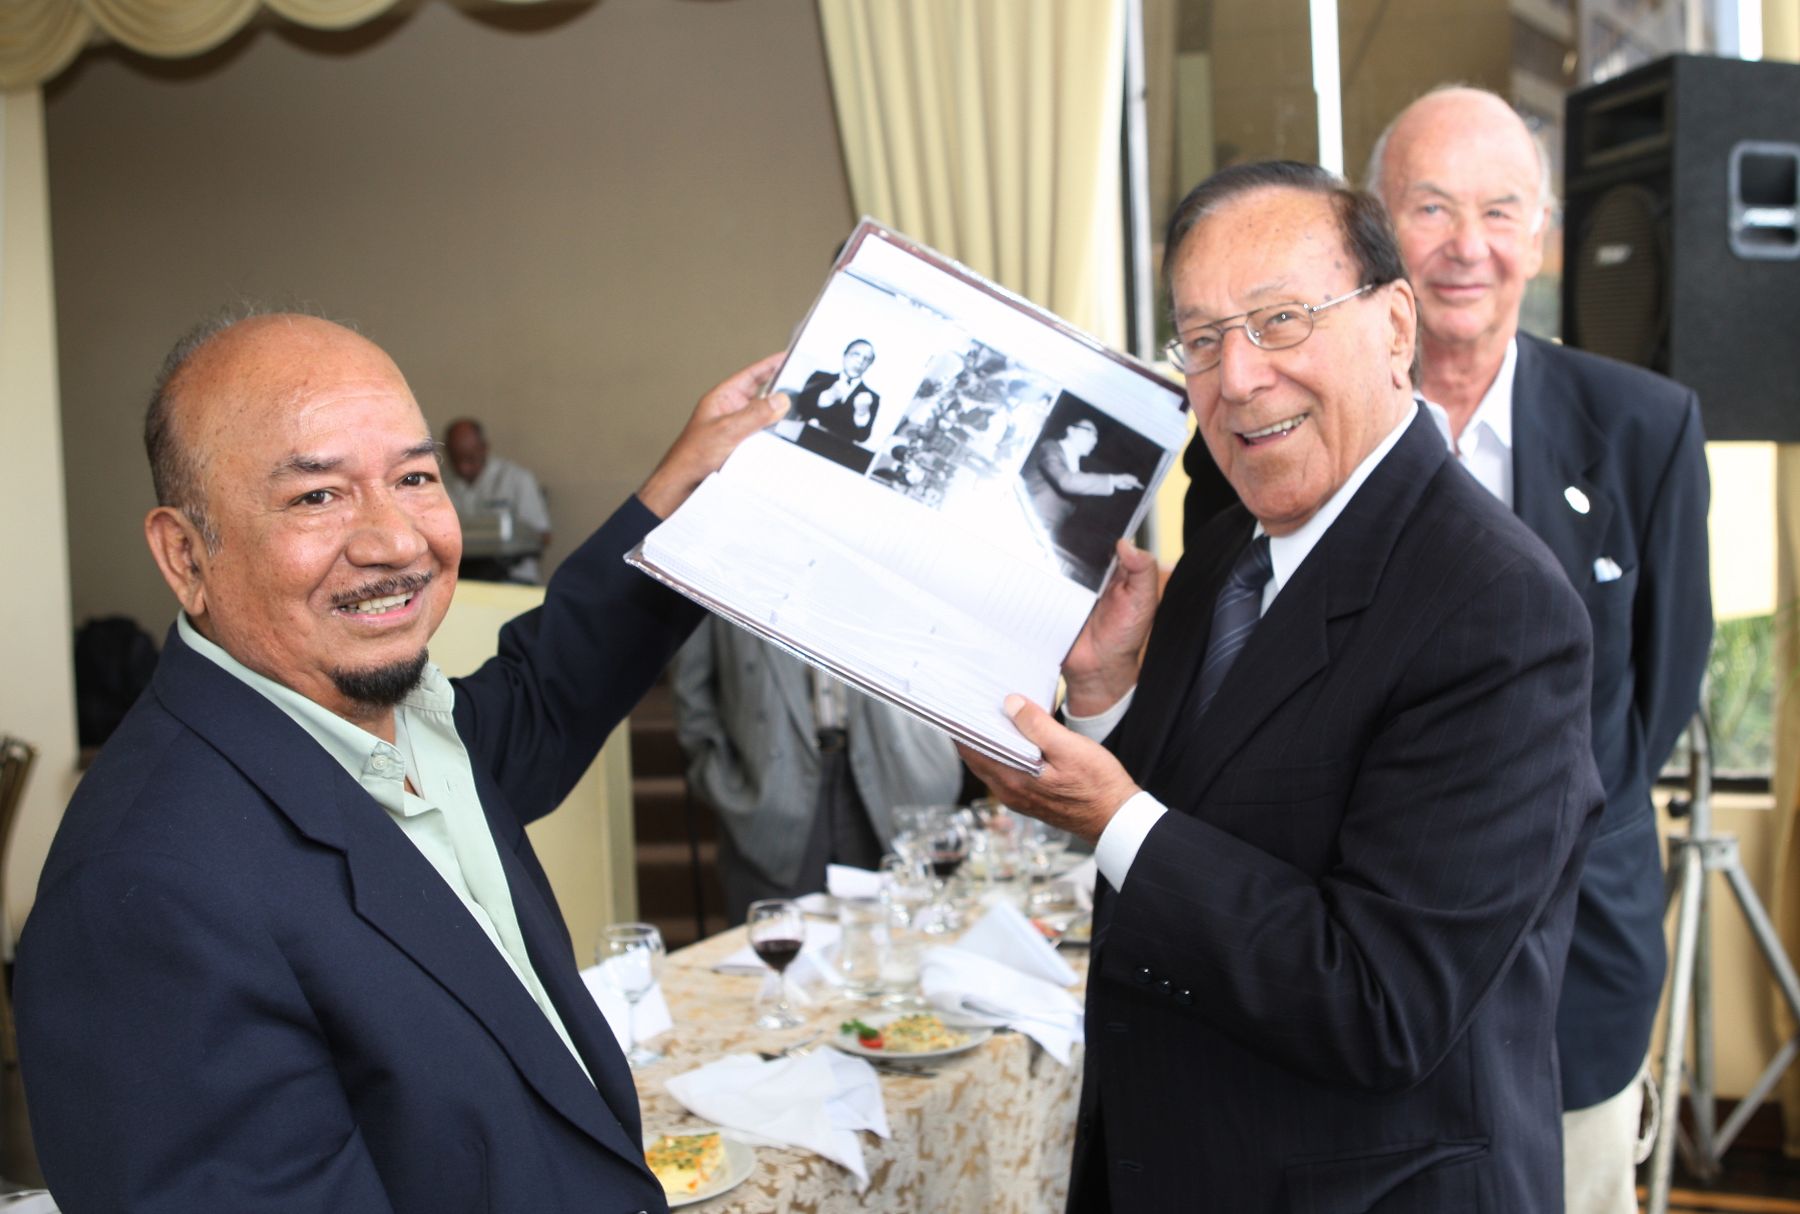 El Club de Periodistas del Perú, que preside Domingo Tamariz, rindió homenaje a Luis Bedoya Reyes por sus 90 años. Foto: ANDINA / Norman Córdova